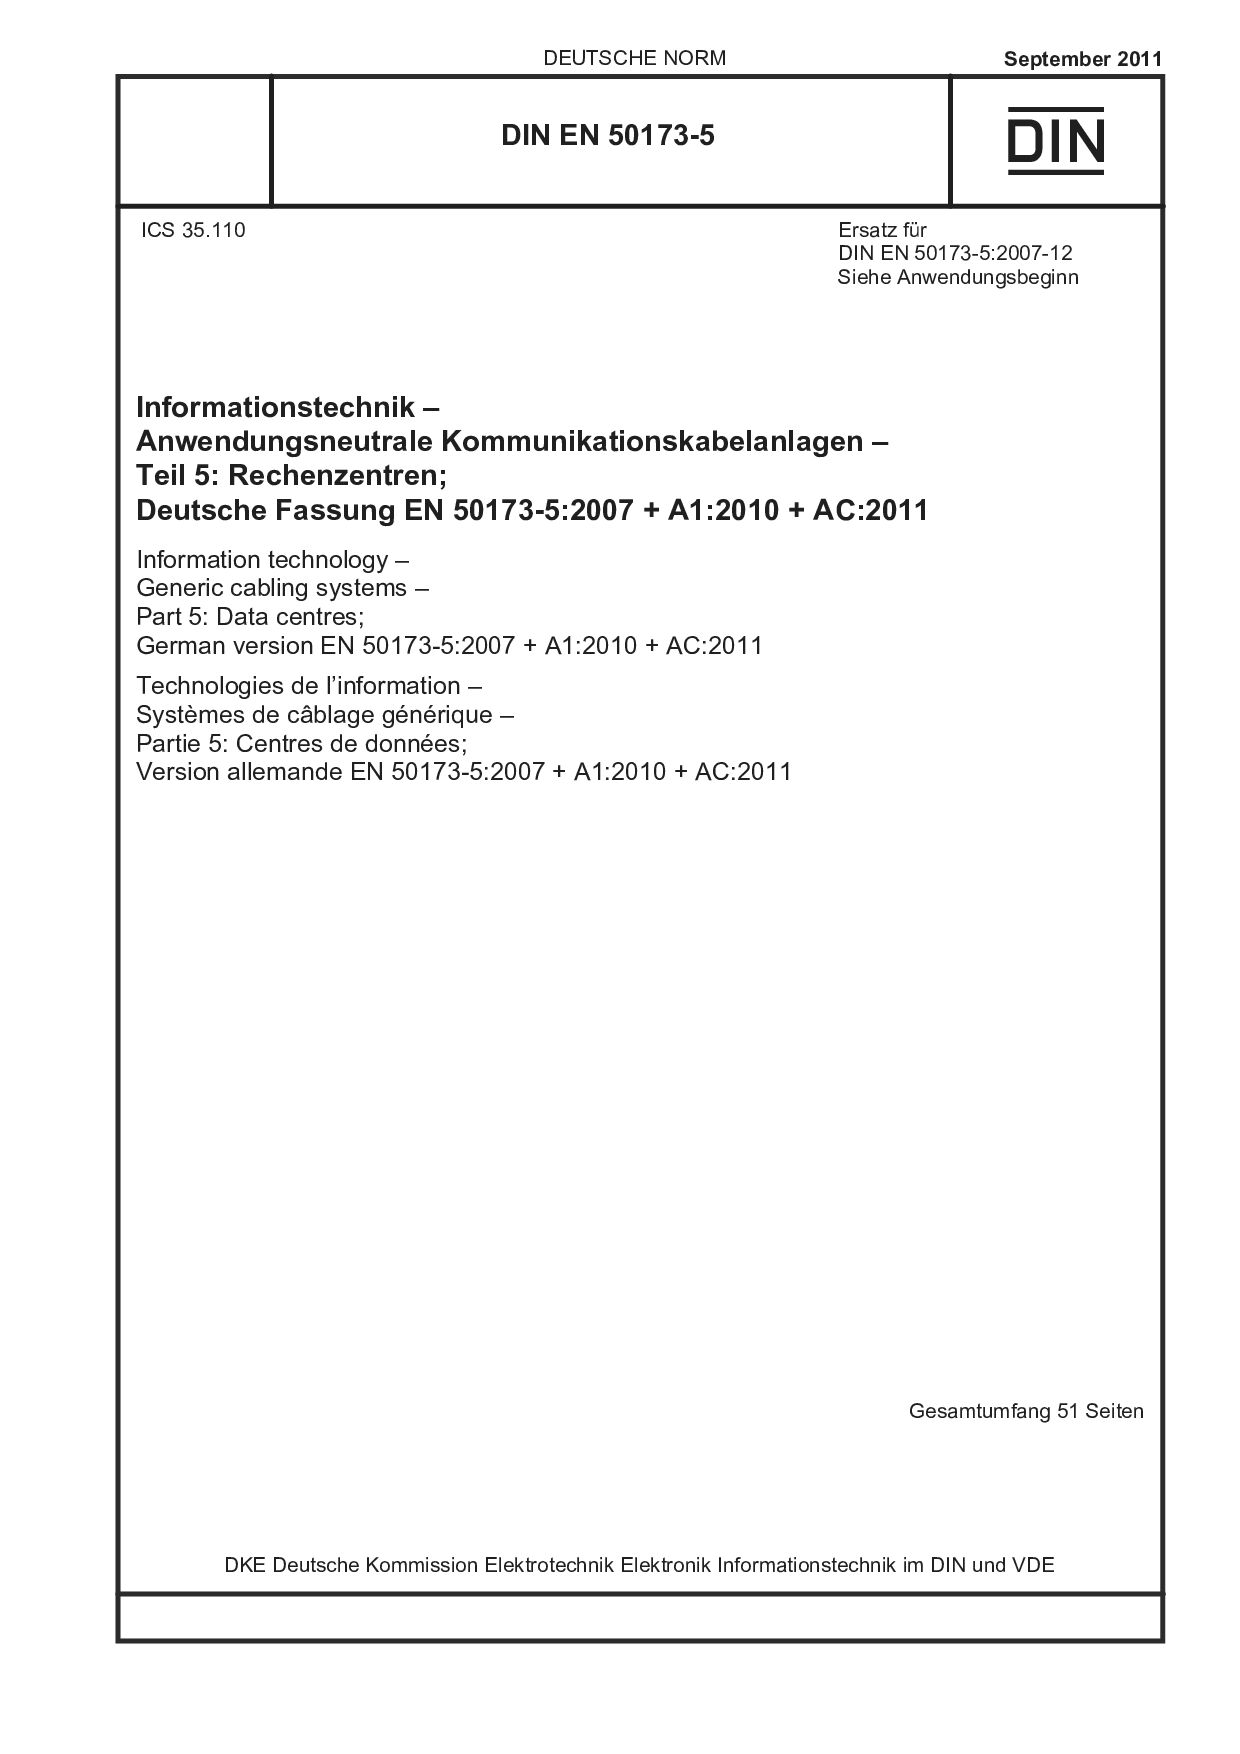 DIN EN 50173-5:2011